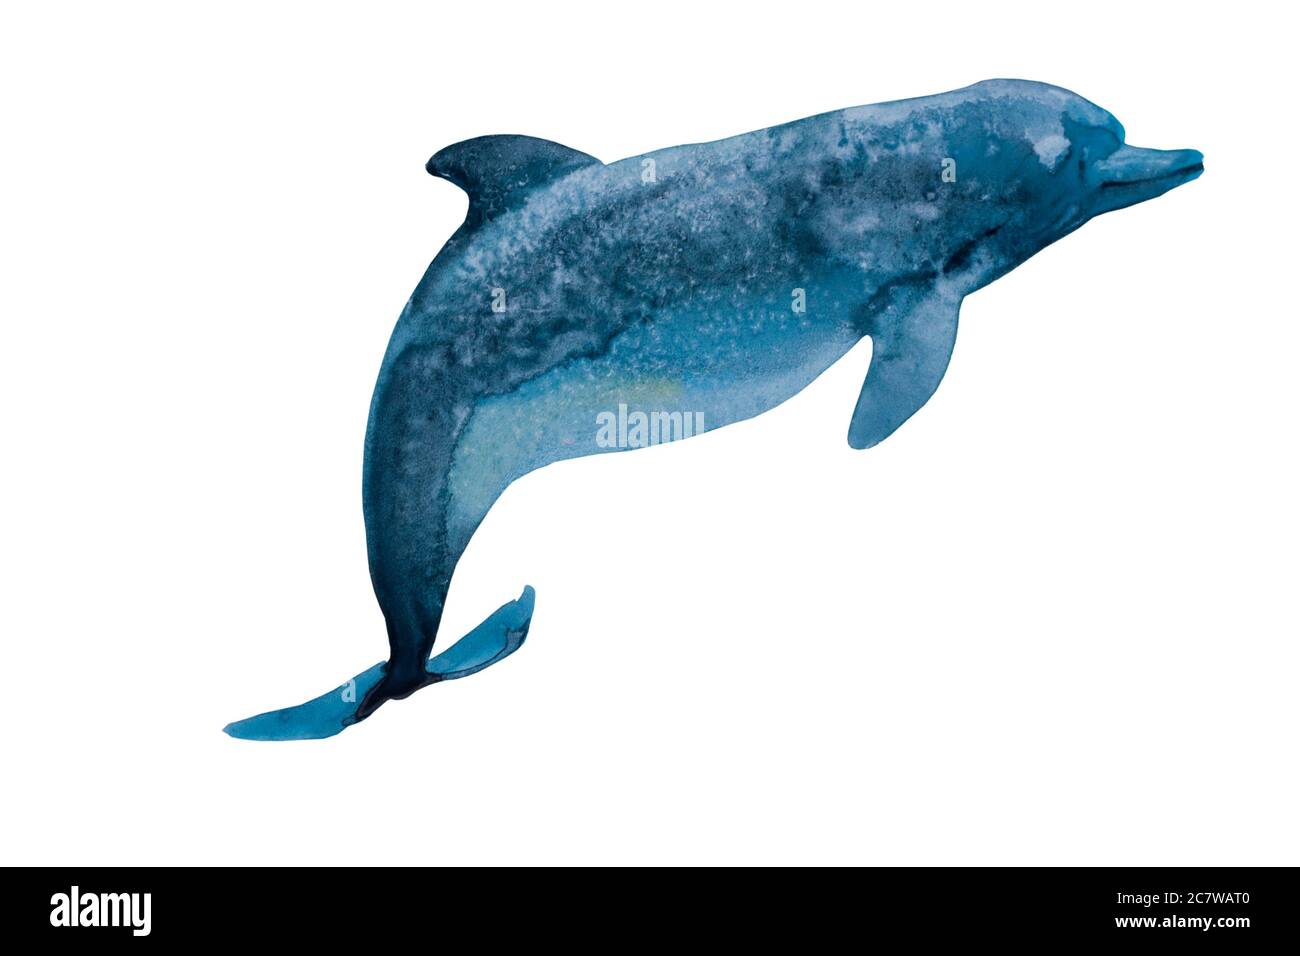 Aquarelle dauphin bleu profond avec taches texture salée. Illustration originale de la peinture à la main d'un animal marin, isolé sur fond blanc Banque D'Images